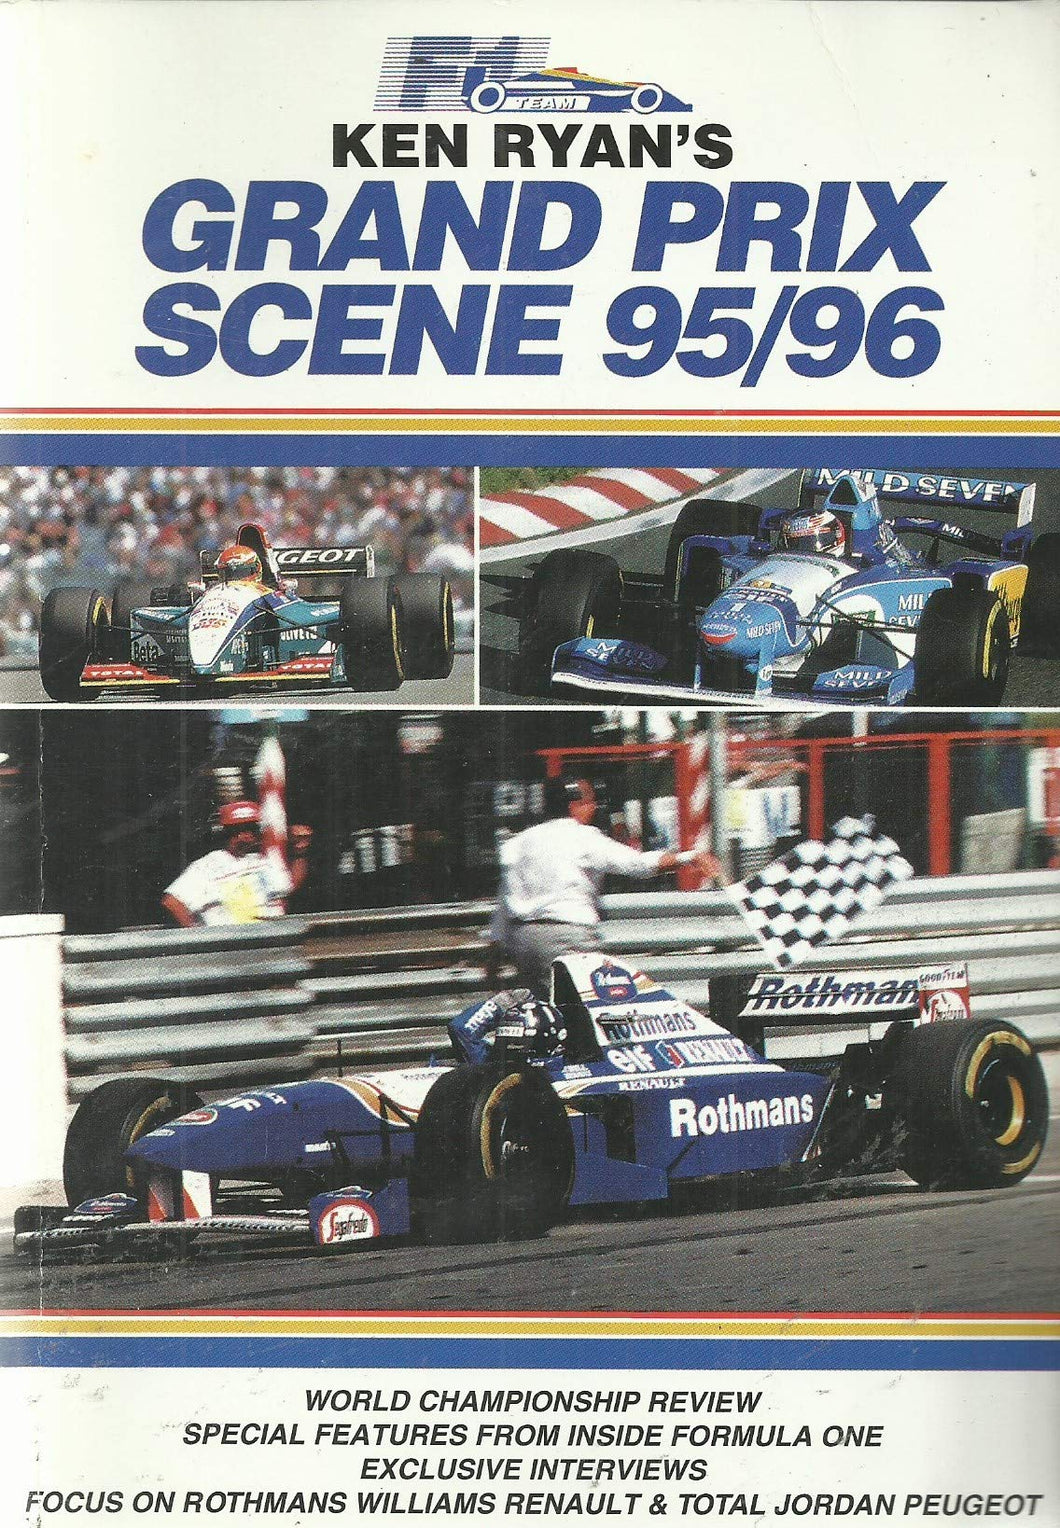 Ken Ryan's Grand Prix Scene 95/96